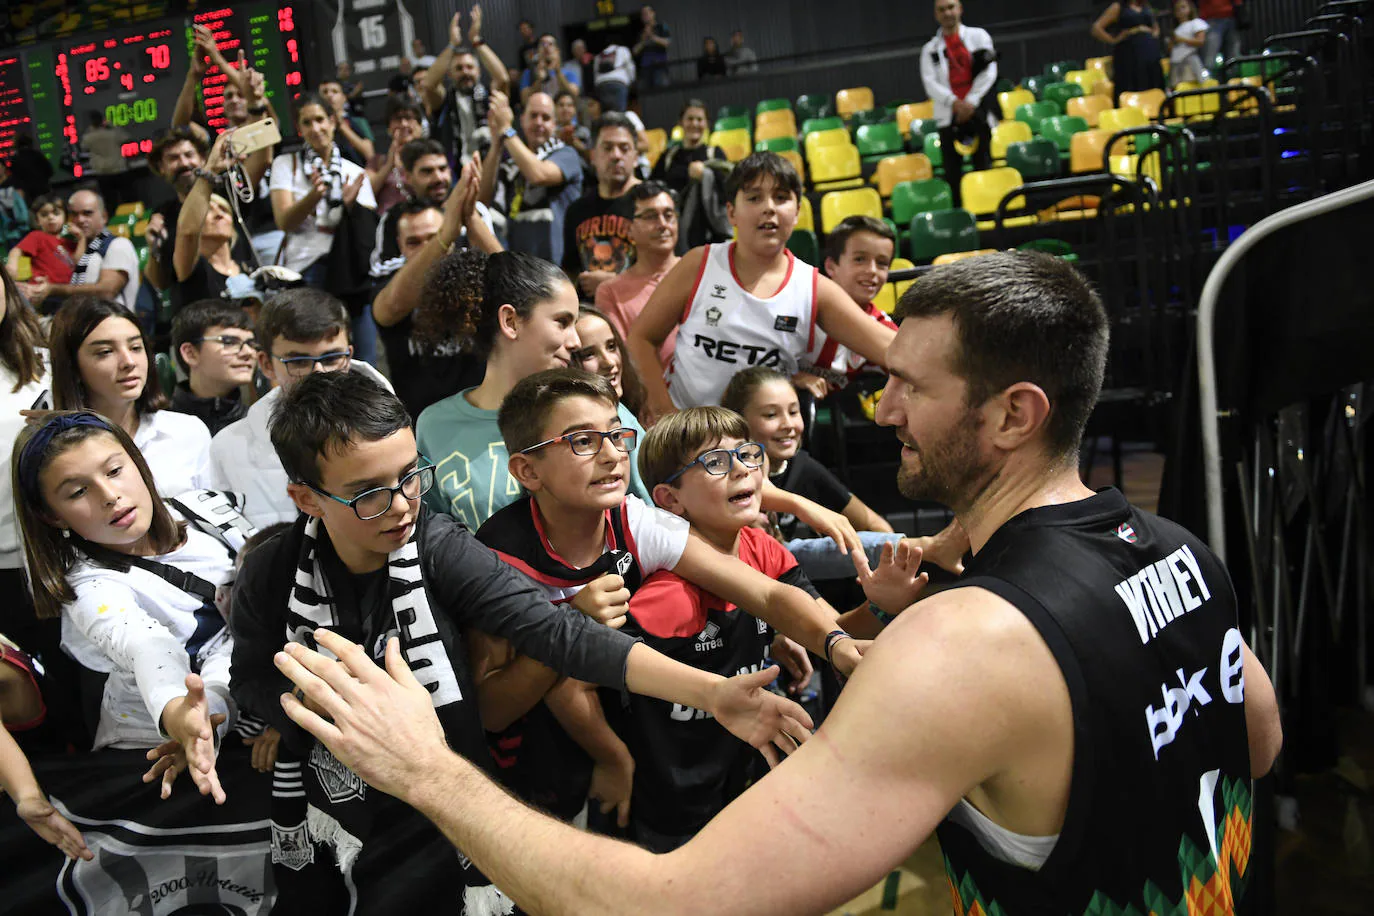 Fotos: Arrollador Bilbao Basket: el Surne gana al Betis (85-70) en Miribilla